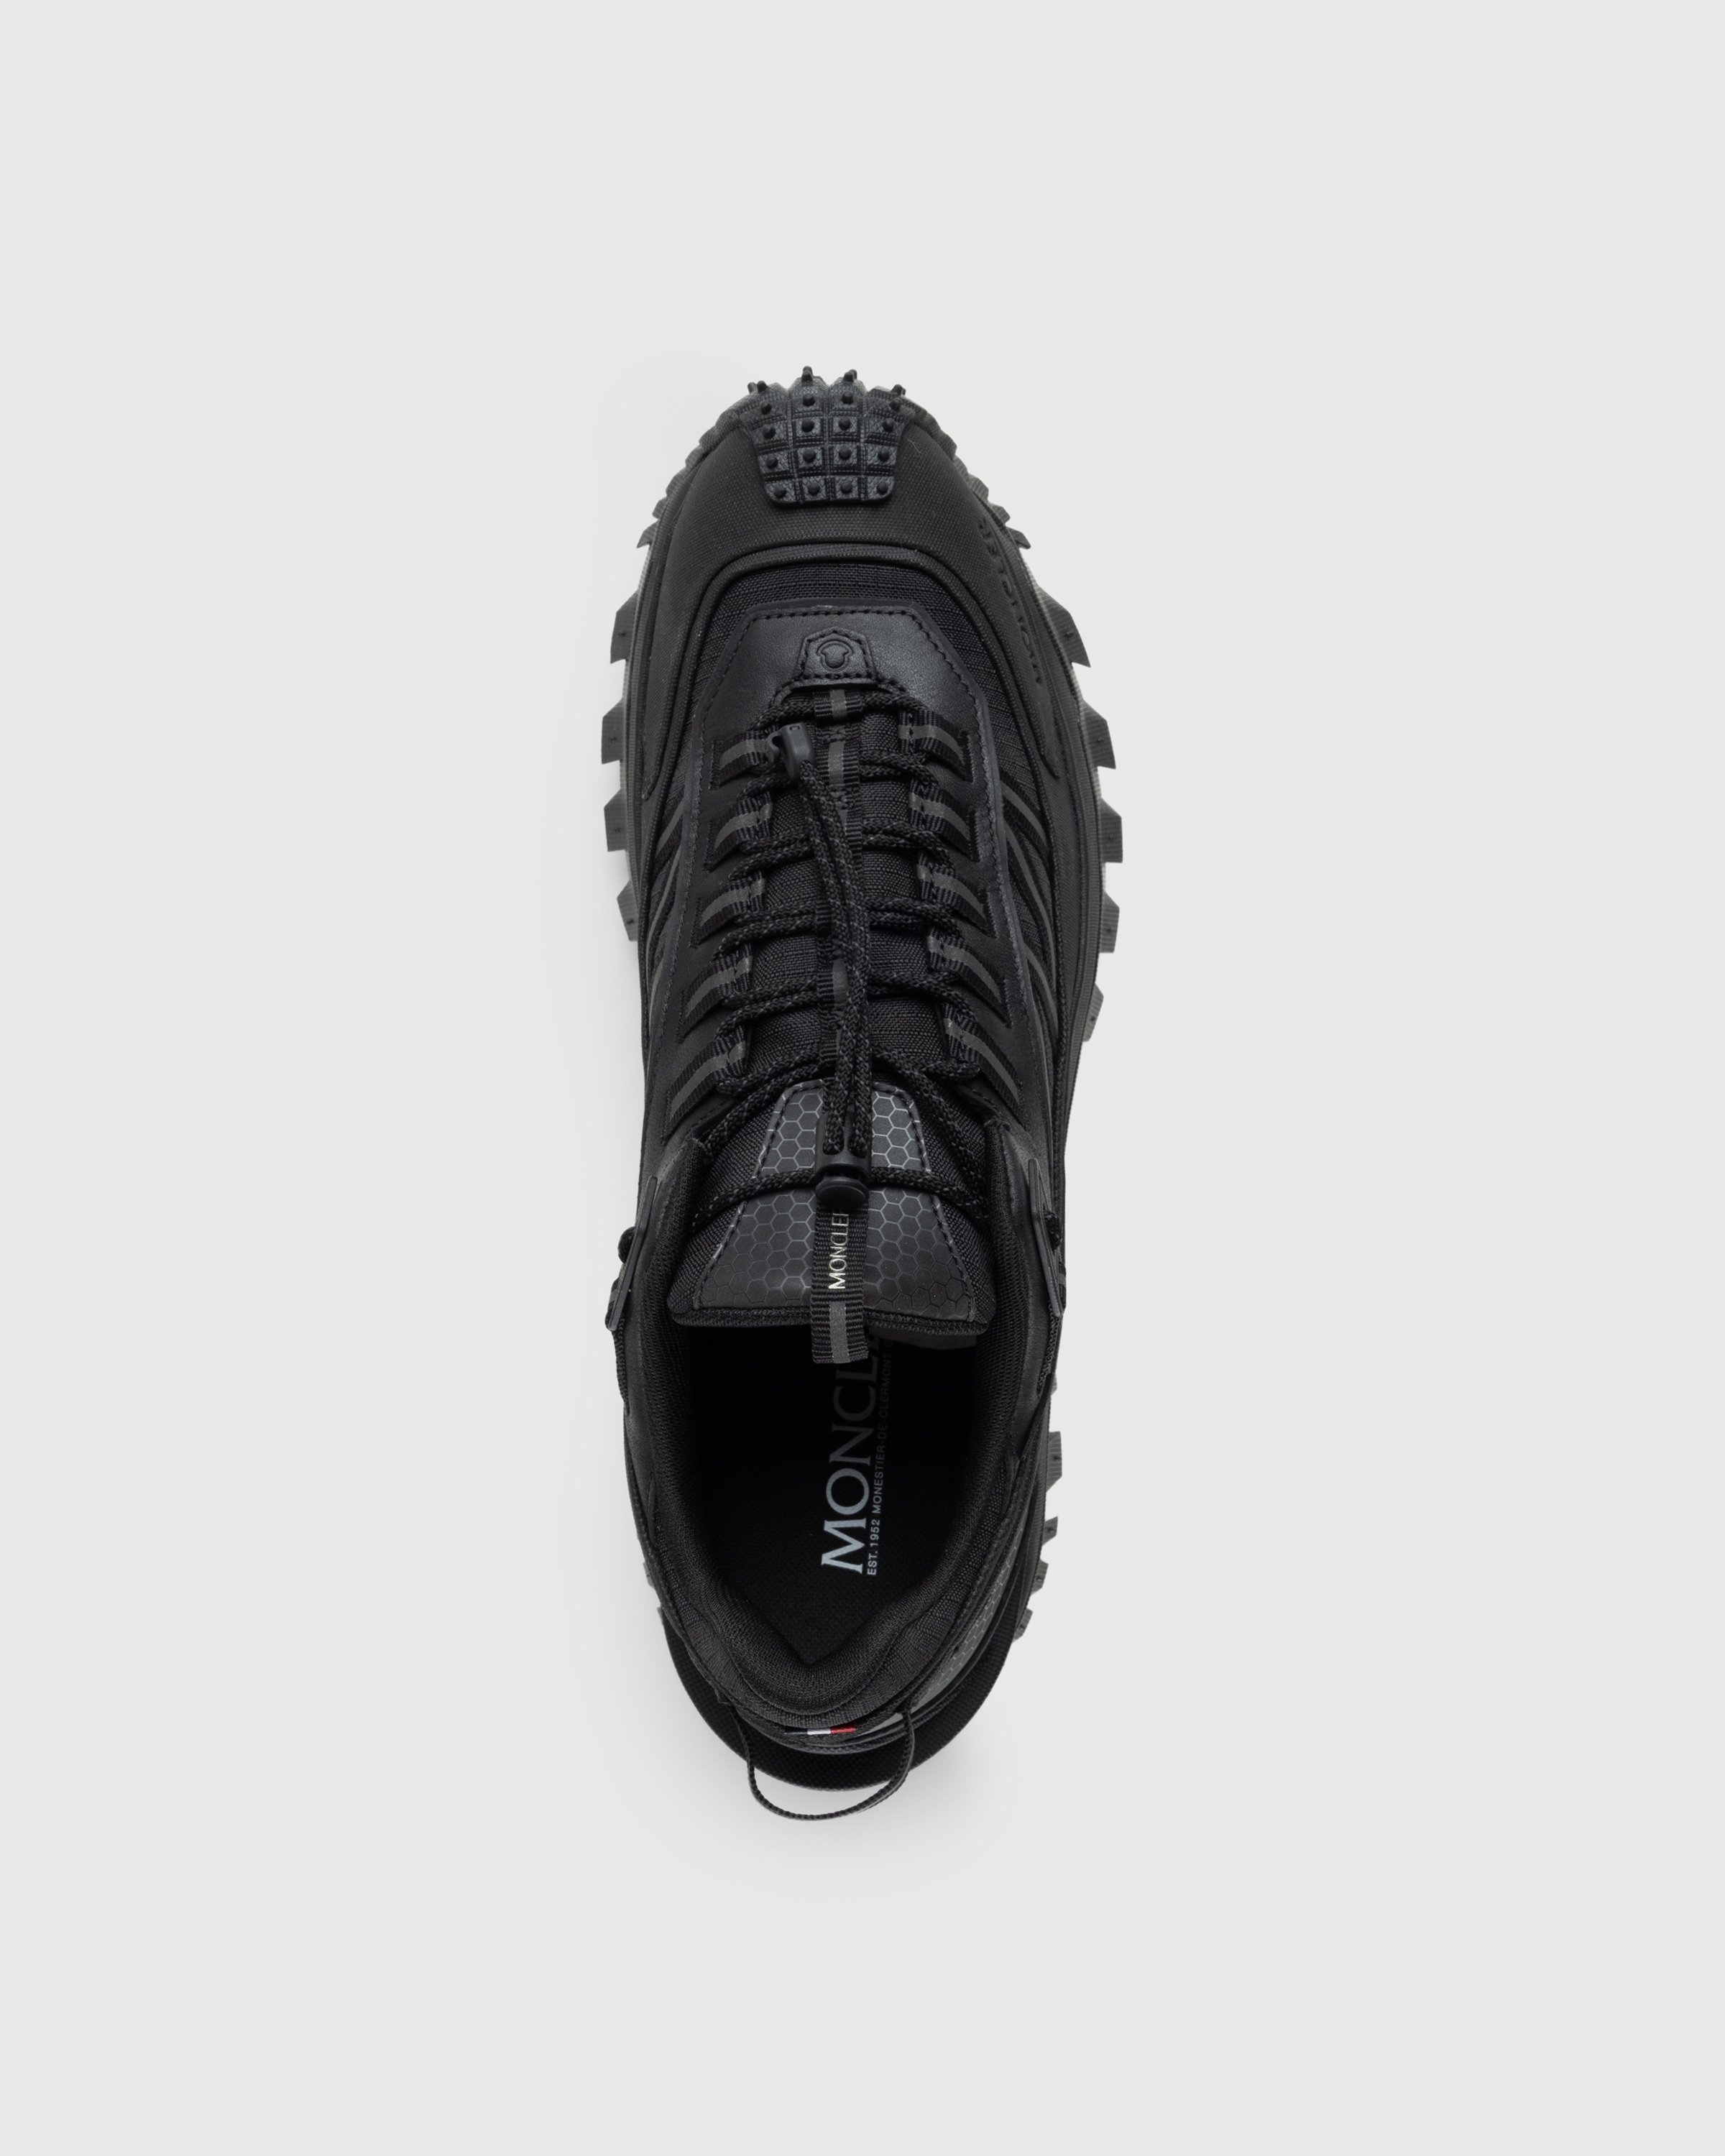 Moncler - Trailgrip GTX Low-Top Sneakers Black - Footwear - Black - Image 5